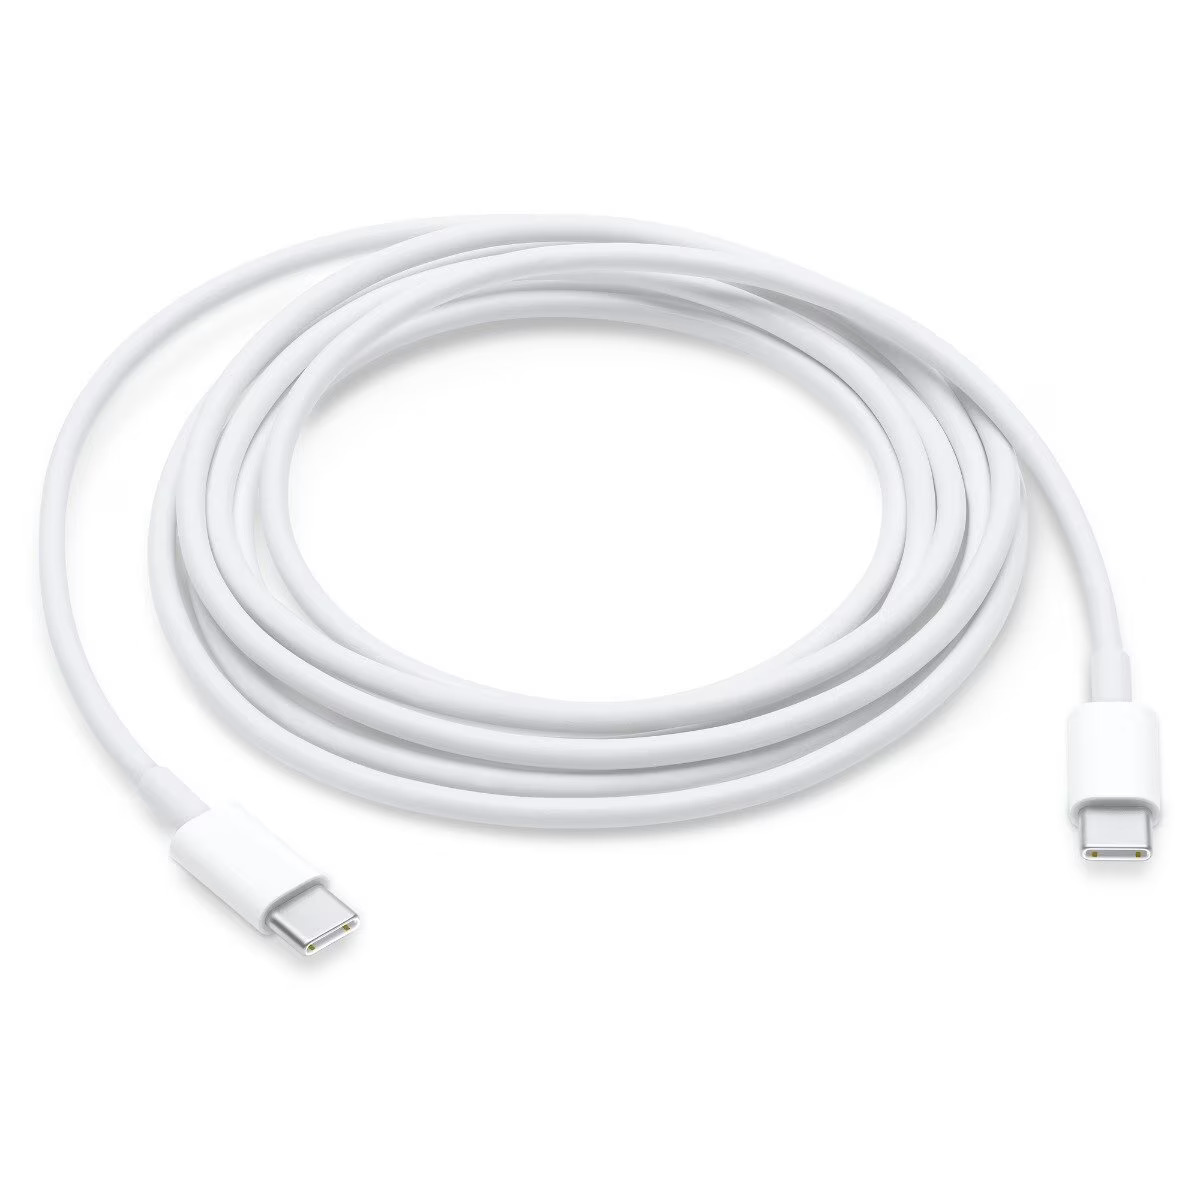 Cablu de incarcare Apple Type-C la Type-C pentru MacBook Pro/Air, 2M lungime, MLL82ZM/A, Alb